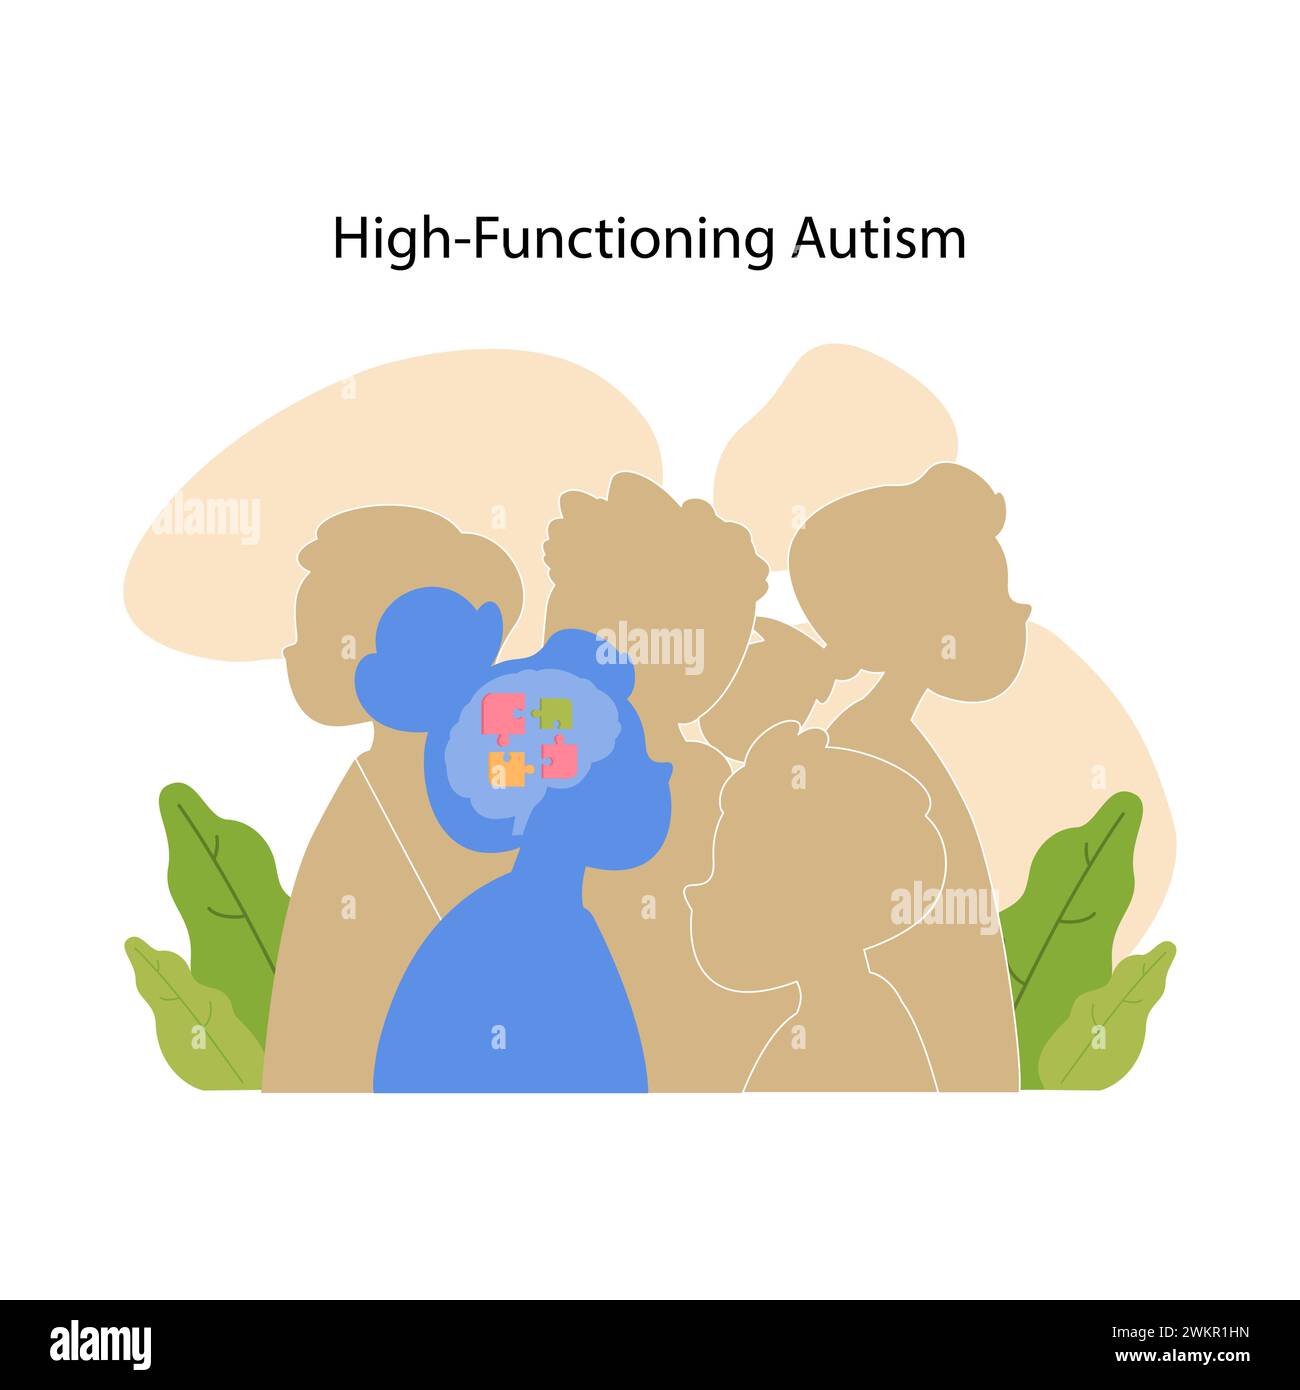 Les silhouettes avec un motif de puzzle dans la région du cerveau décrivent la complexité et la diversité de l'autisme de haut niveau. Illustration vectorielle plate Illustration de Vecteur